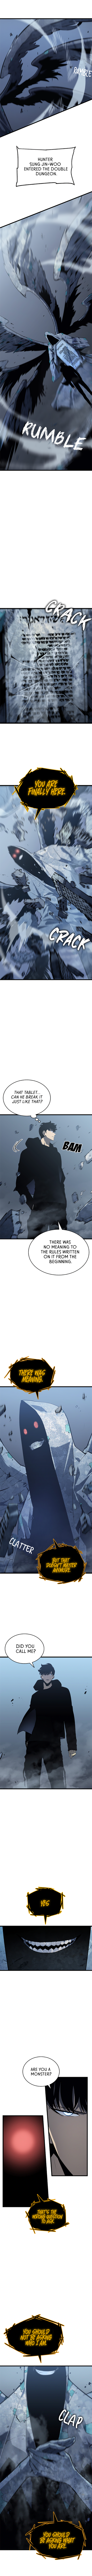 Solo Leveling Manga Manga Chapter - 125 - image 2